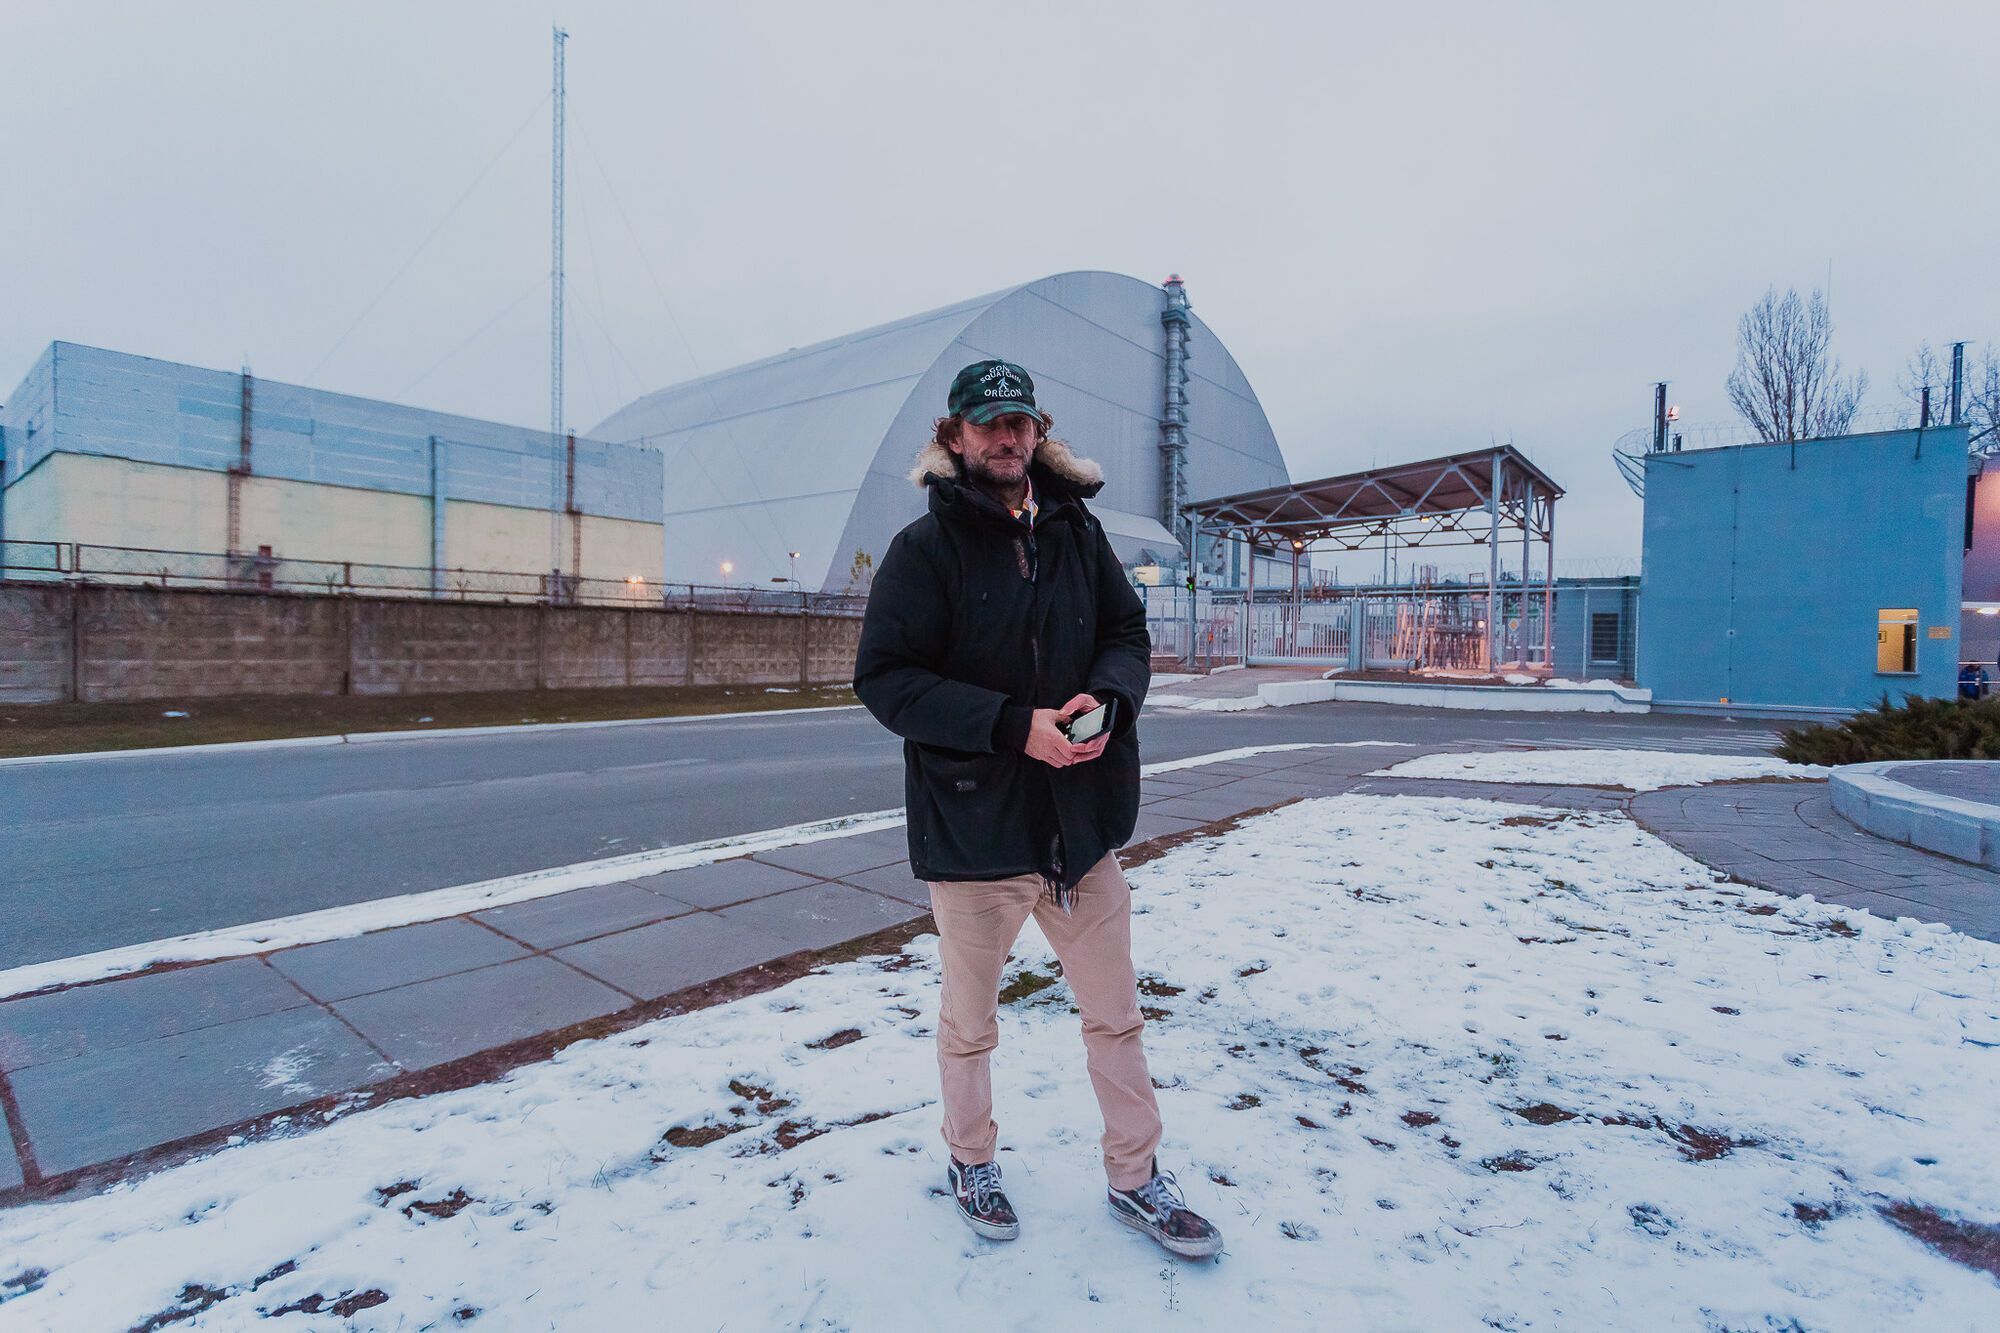 Telepopmusik сняли клип в Чернобыле.